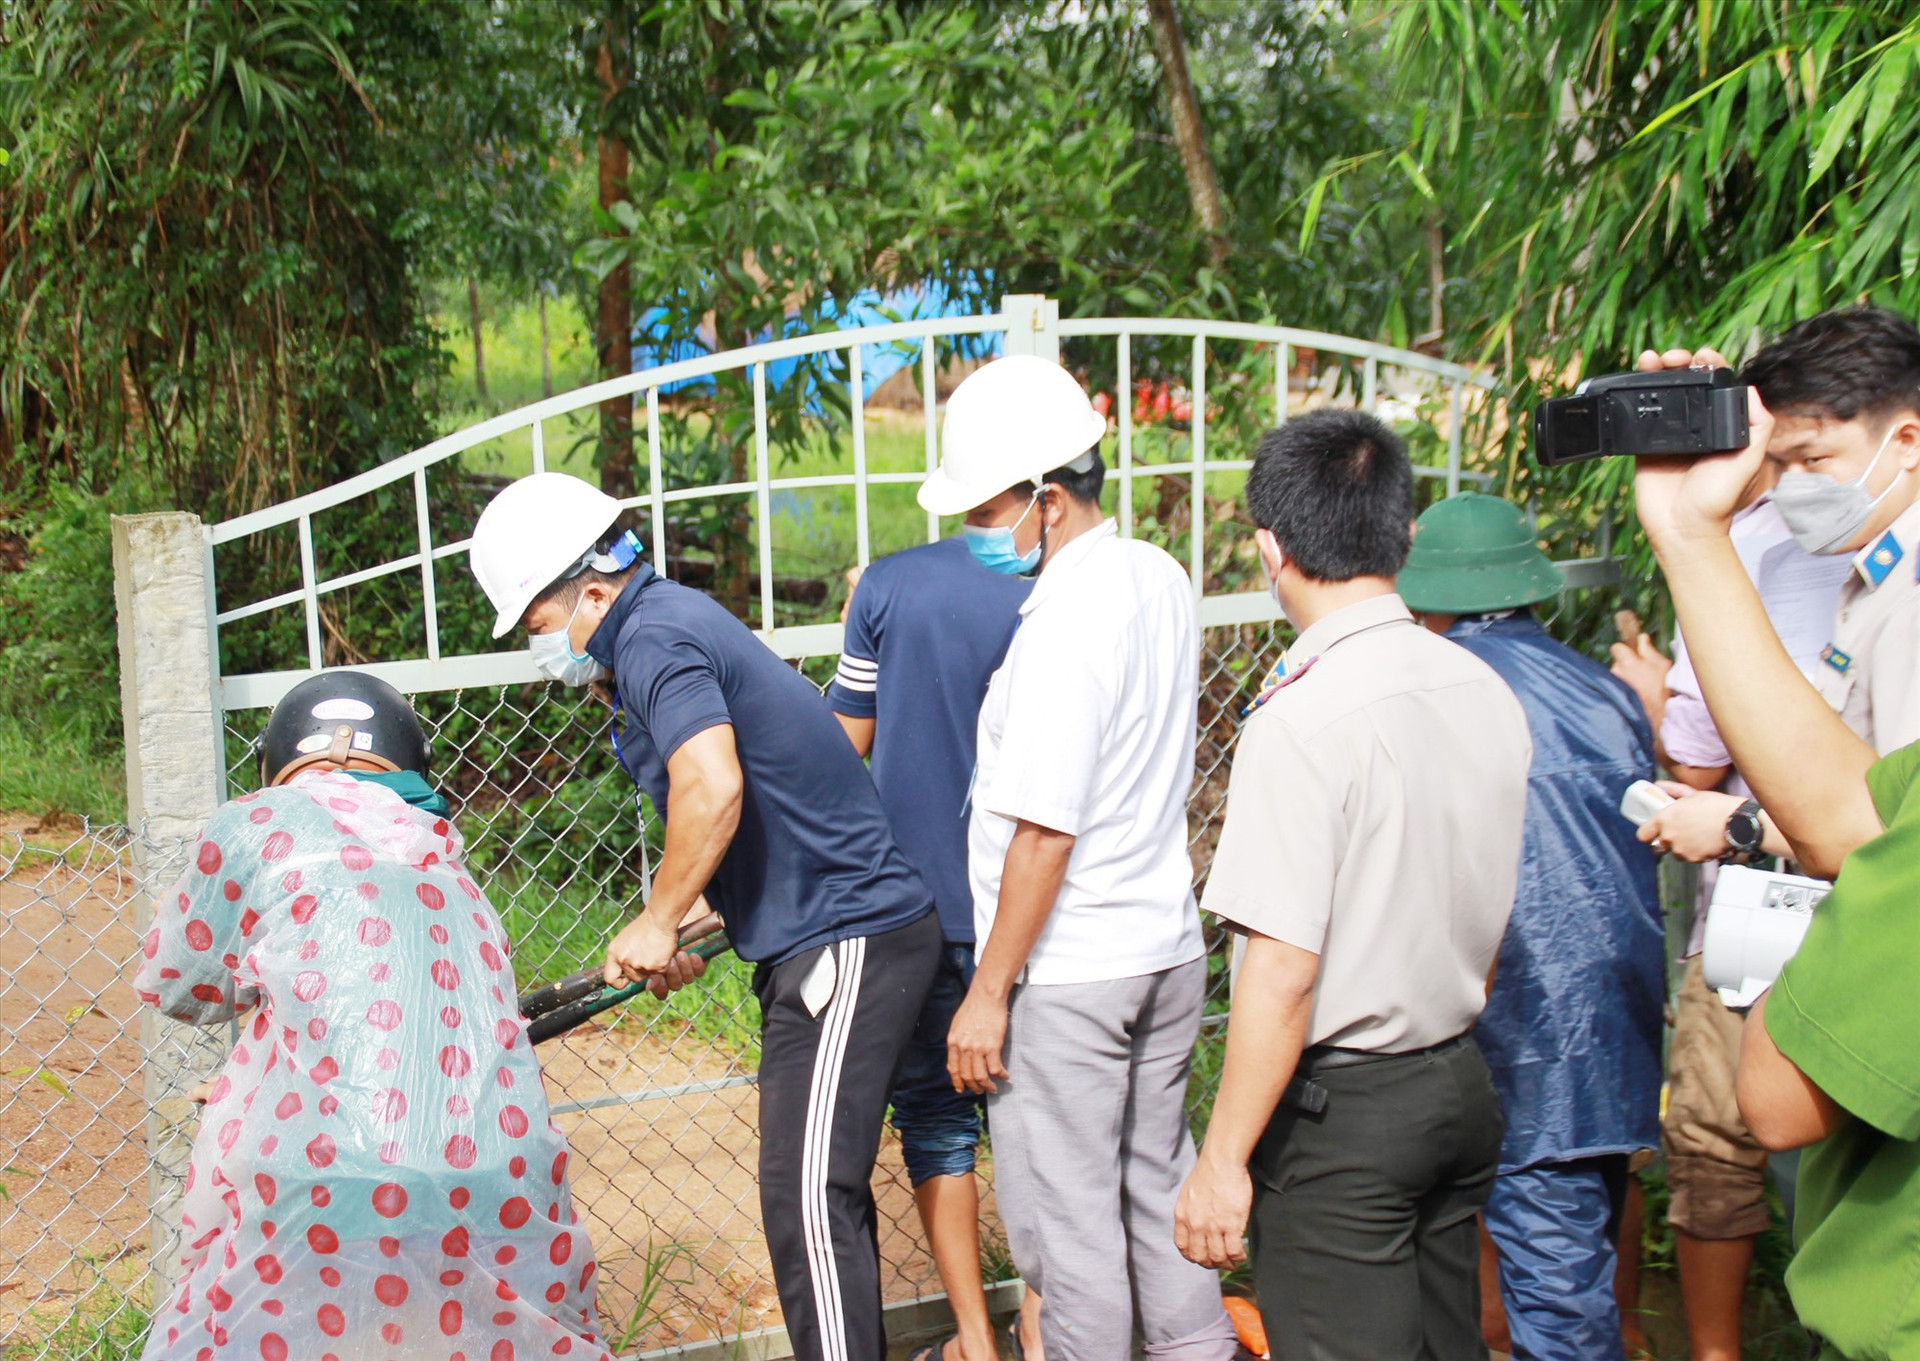 Cục Thi hành án dân sự tỉnh phối hợp cơ quan chức năng tiến hành cưỡng chế, bàn giao đất cho một hộ dân ở Thăng Bình vào cuối tháng 10 vừa qua. Ảnh: P.V